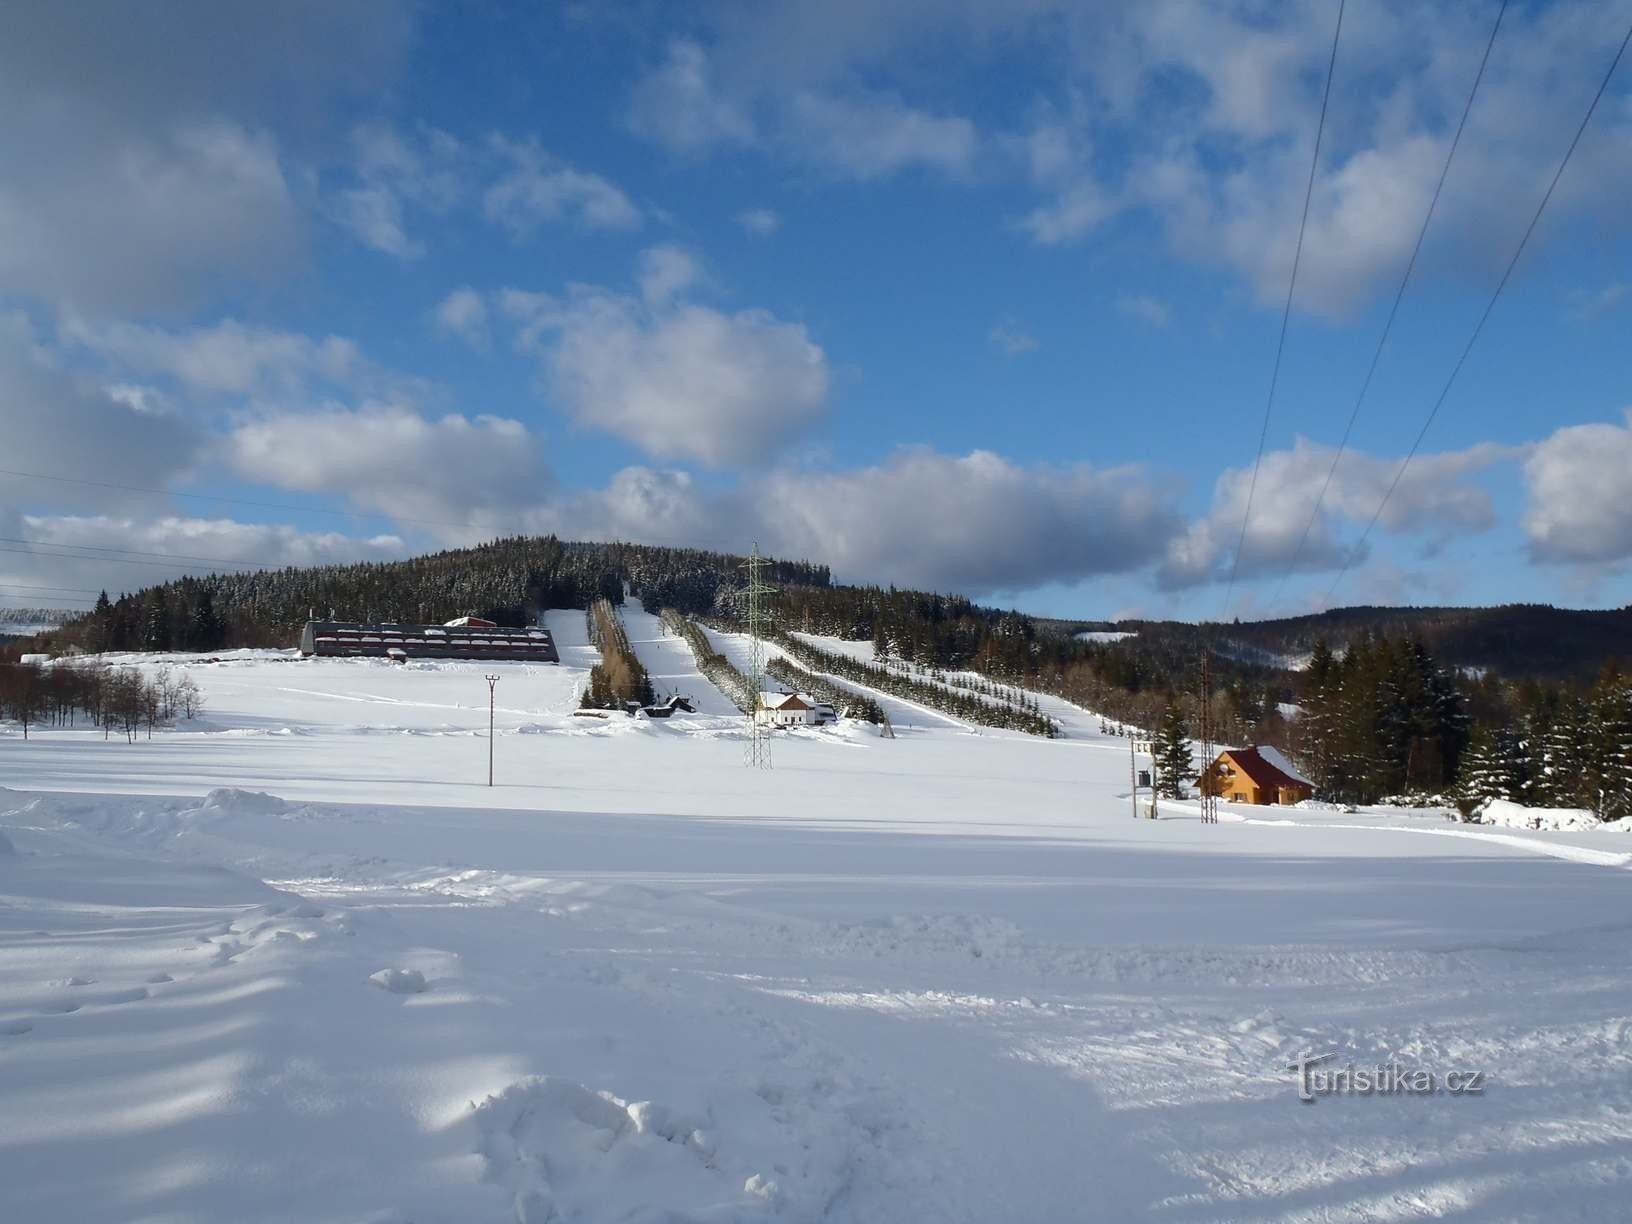 从 Ramzová 站出发的滑雪区 Pod Klínem - 20.2.2012 年 XNUMX 月 XNUMX 日